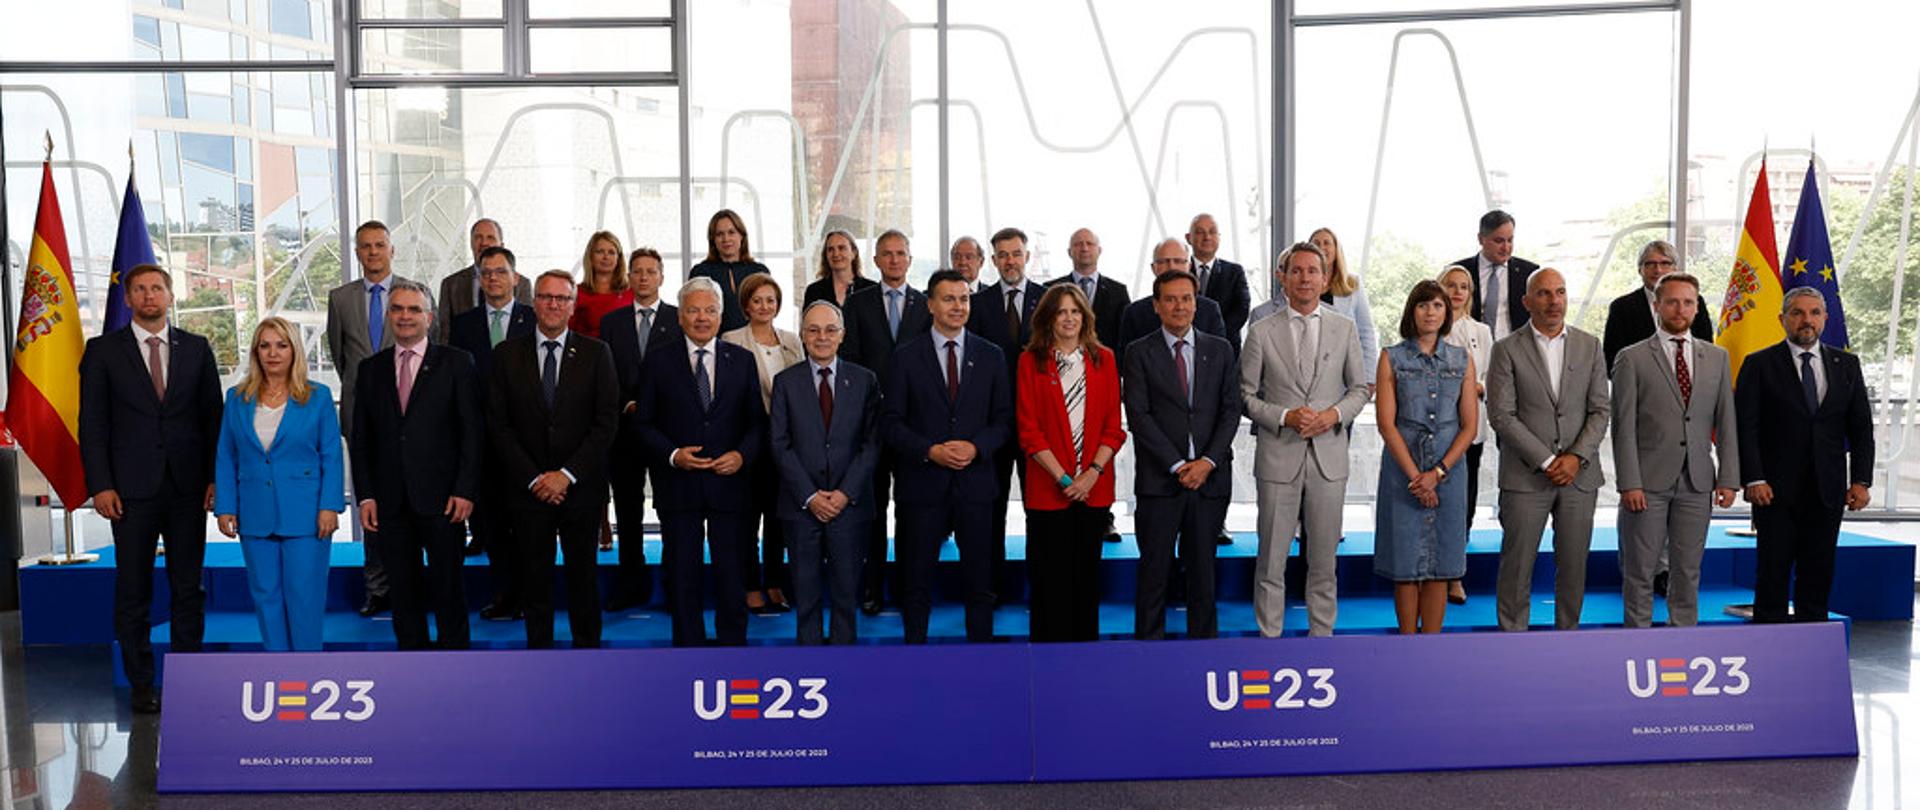 Wiceminister Kamila Król na posiedzeniu nieformalnej Rady ds. Konkurencyjności w Bilbao. Zdjęcie przedstawia wszystkich uczestników posiedzenia. Po prawej i lewej stronie ustawiona jest flaga UE i Hiszpanii. Przed uczestnikami na podłodze, długi, niebieski baner UE 2023 r.